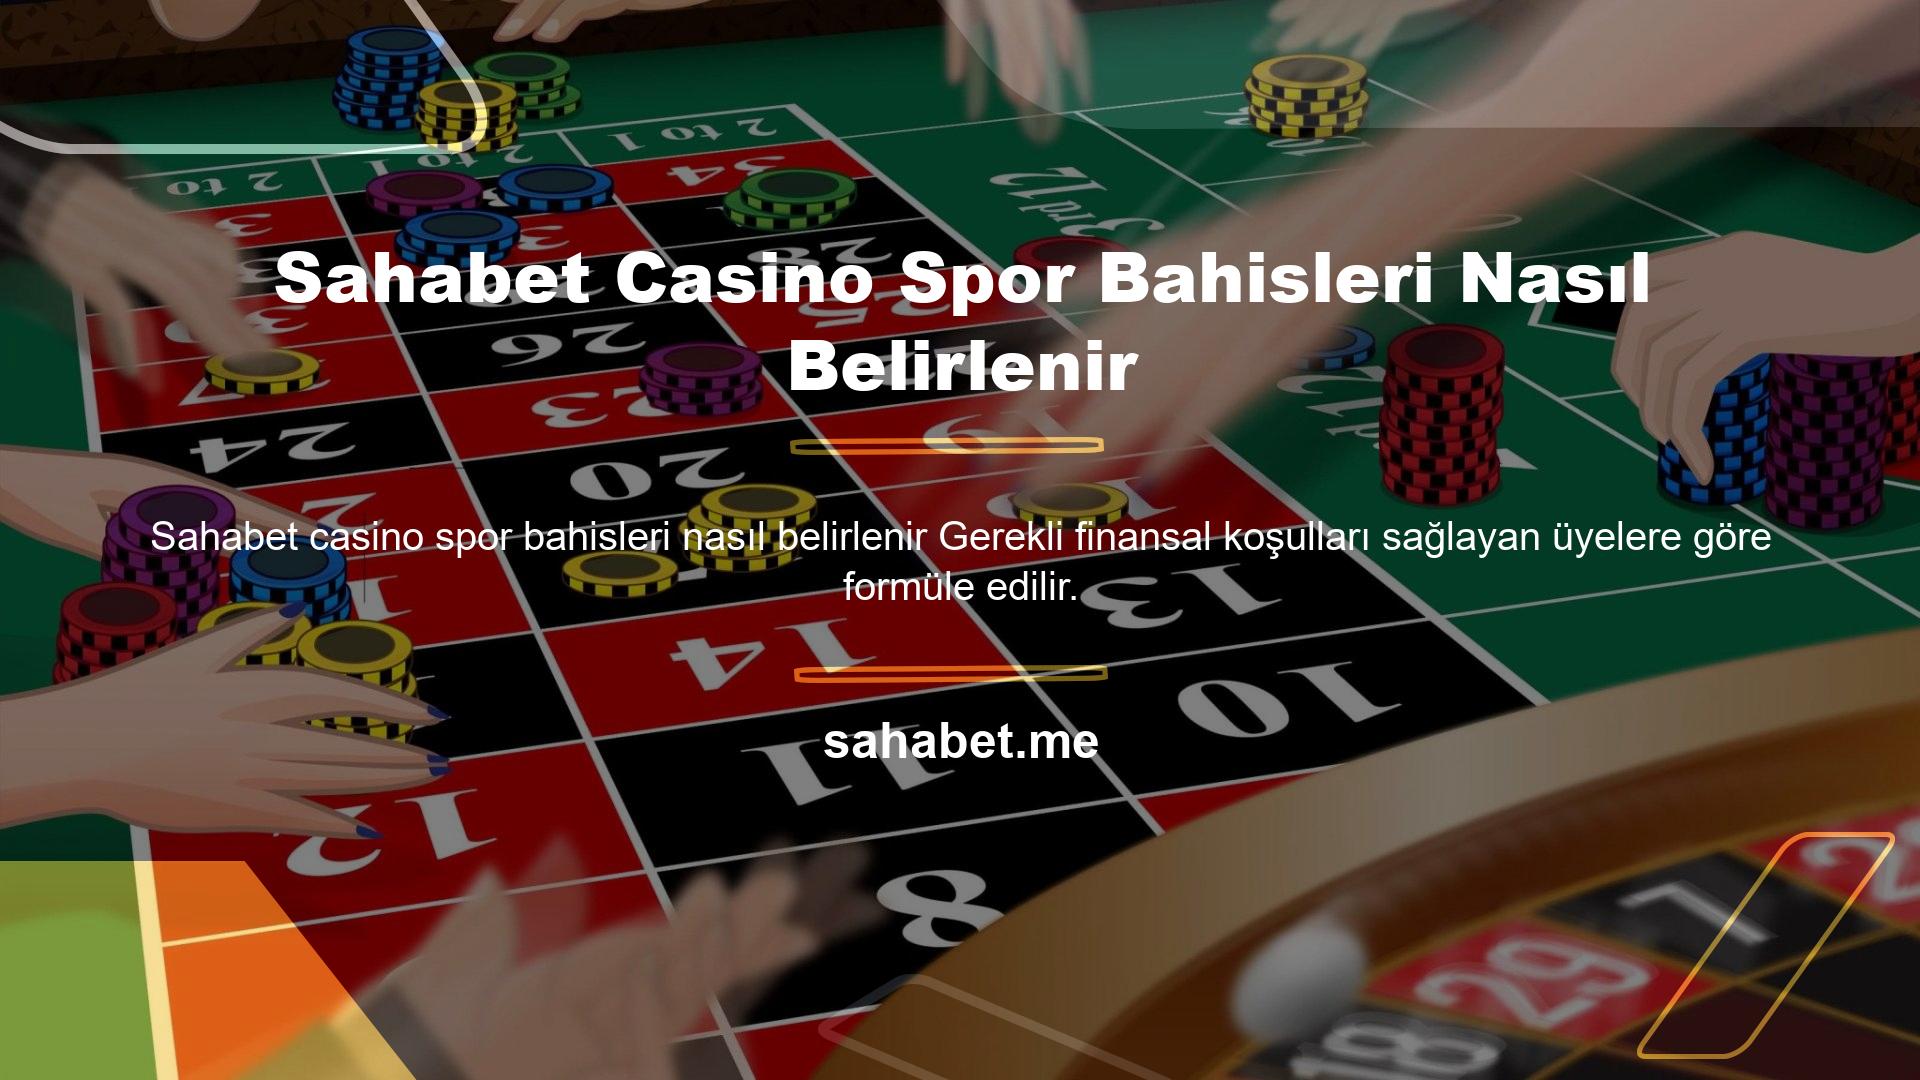 Spor bahisleri, canlı bahisler ve casino oyunları için oranlar nasıl belirlenir Sahabet Casino, bu konulara ve her şeyden önce kullanıcı memnuniyetini sağlamaya büyük özen gösteren en iyi bahis bürolarından biridir